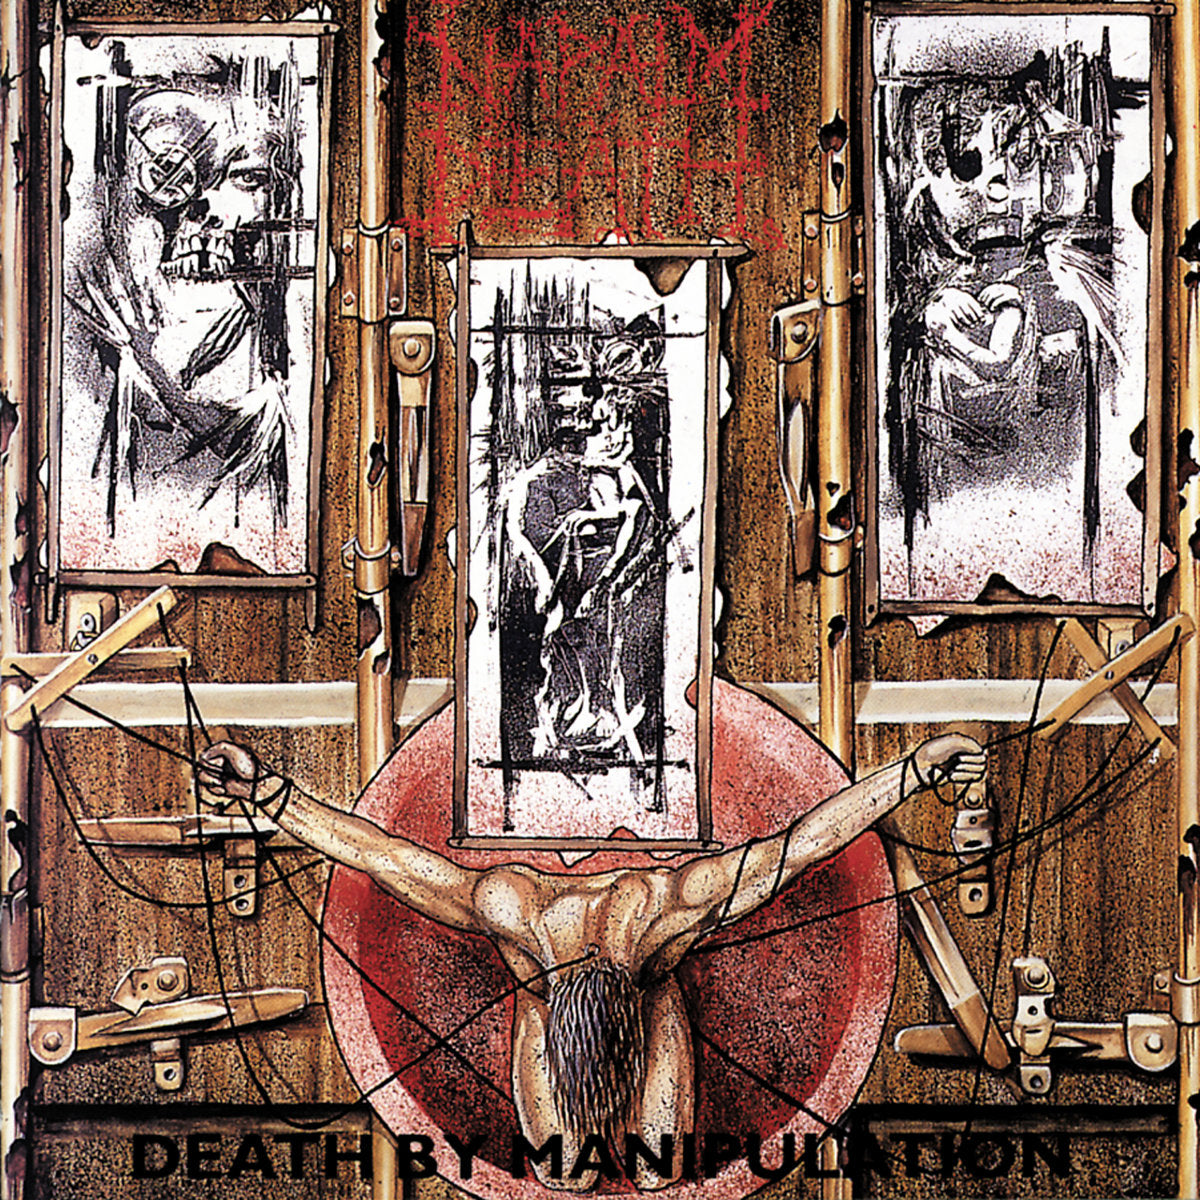 Napalm Death "Death By Manipulation" CD